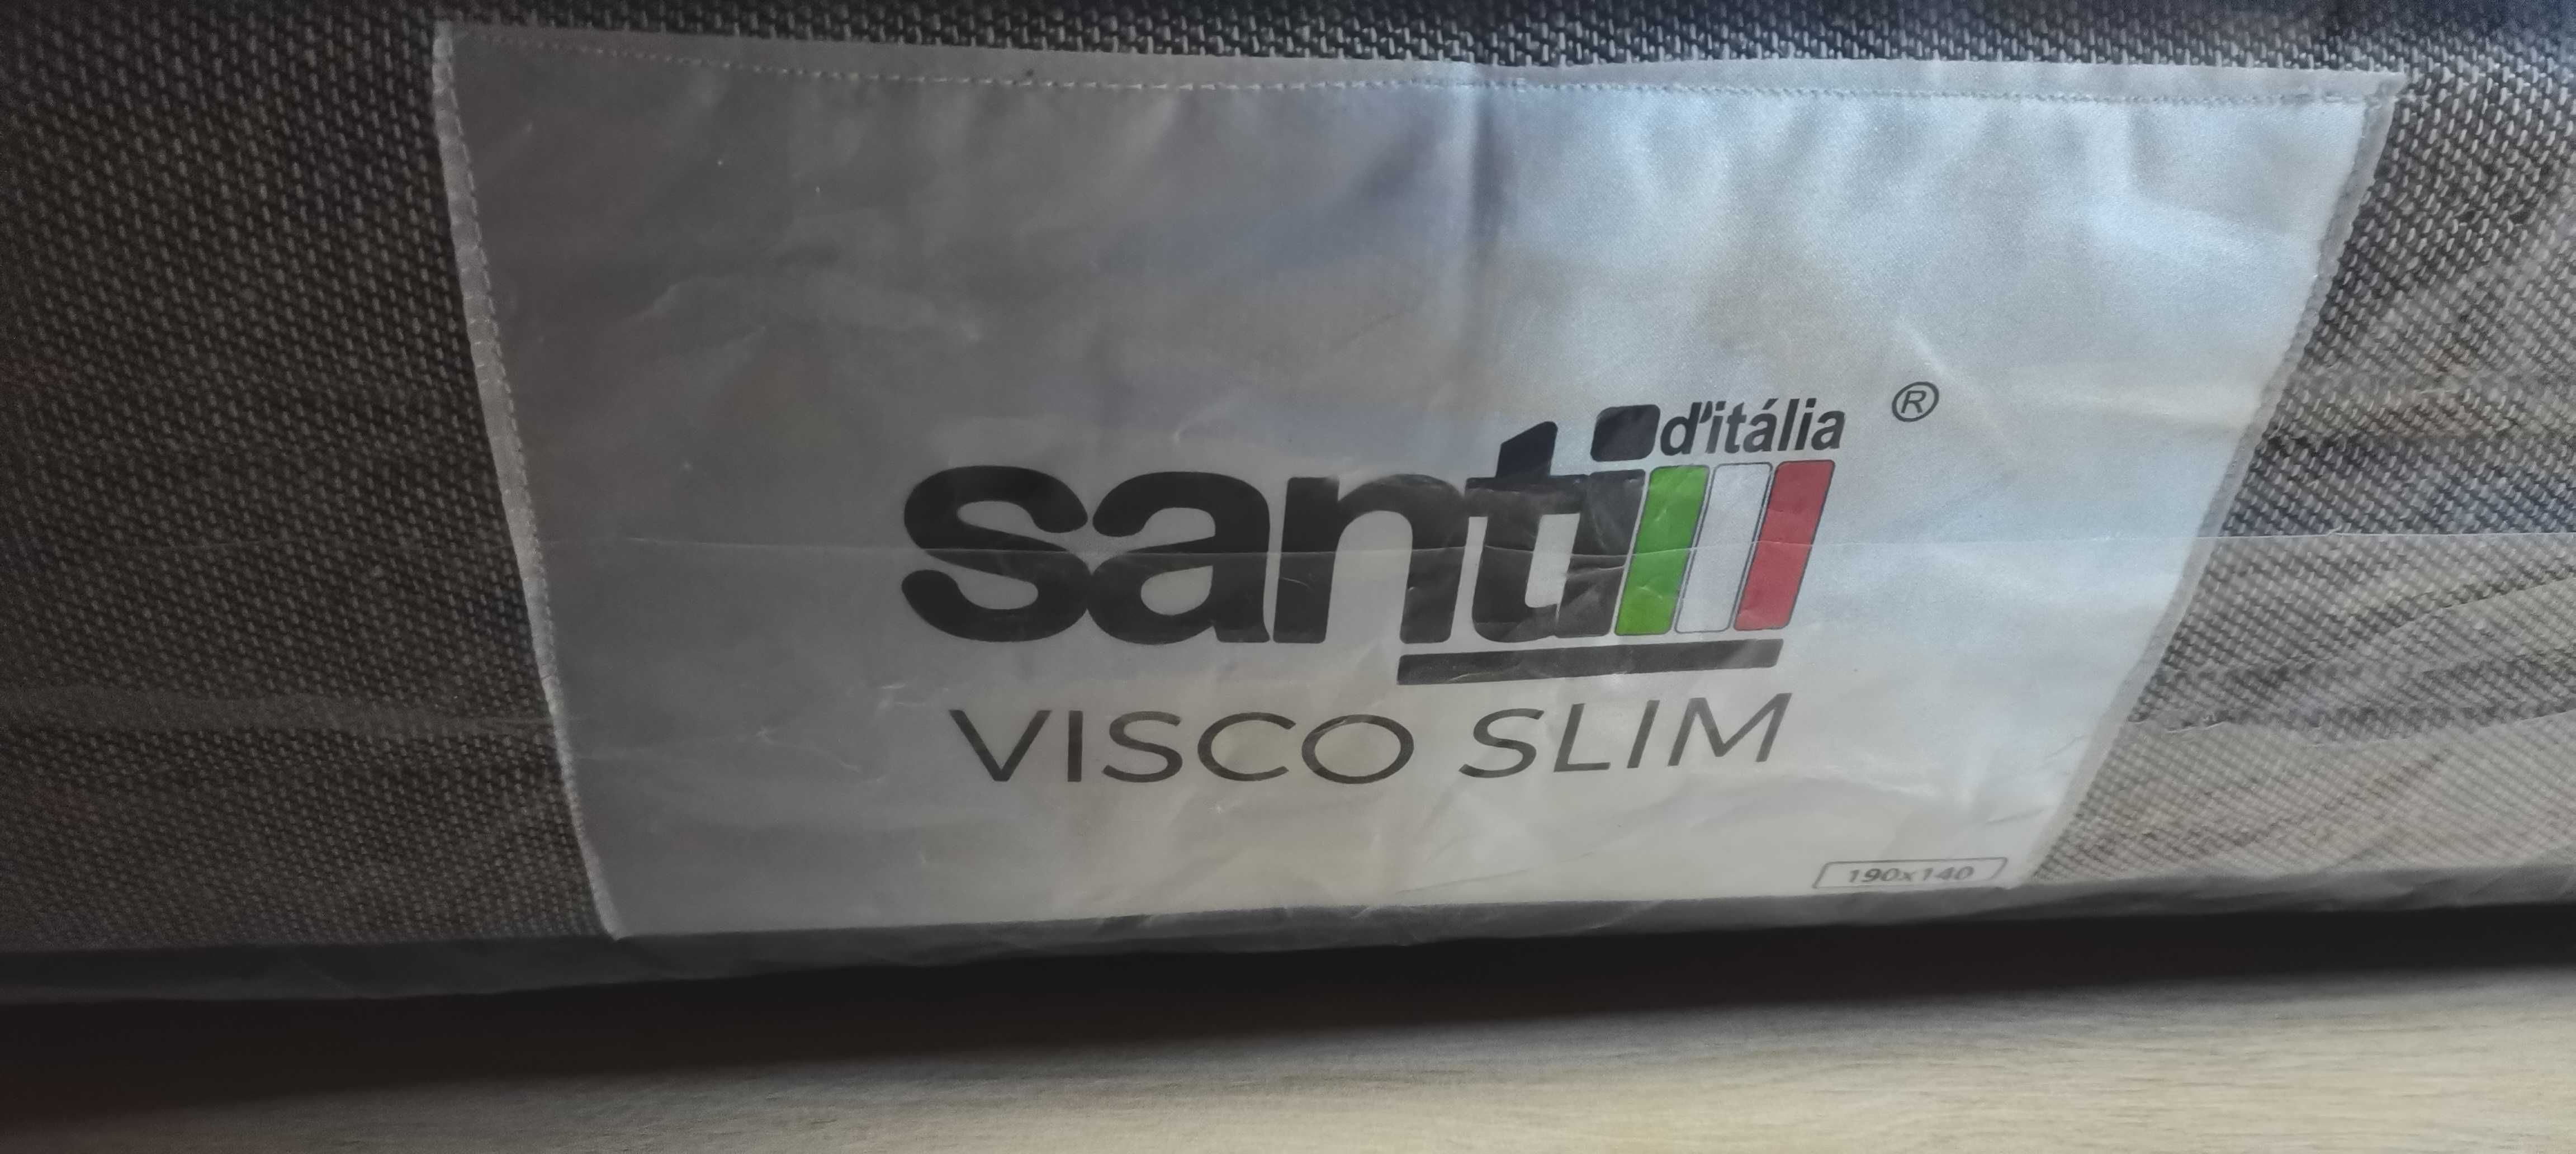 Colchão Santi Visco Slim 140x190 (novo)